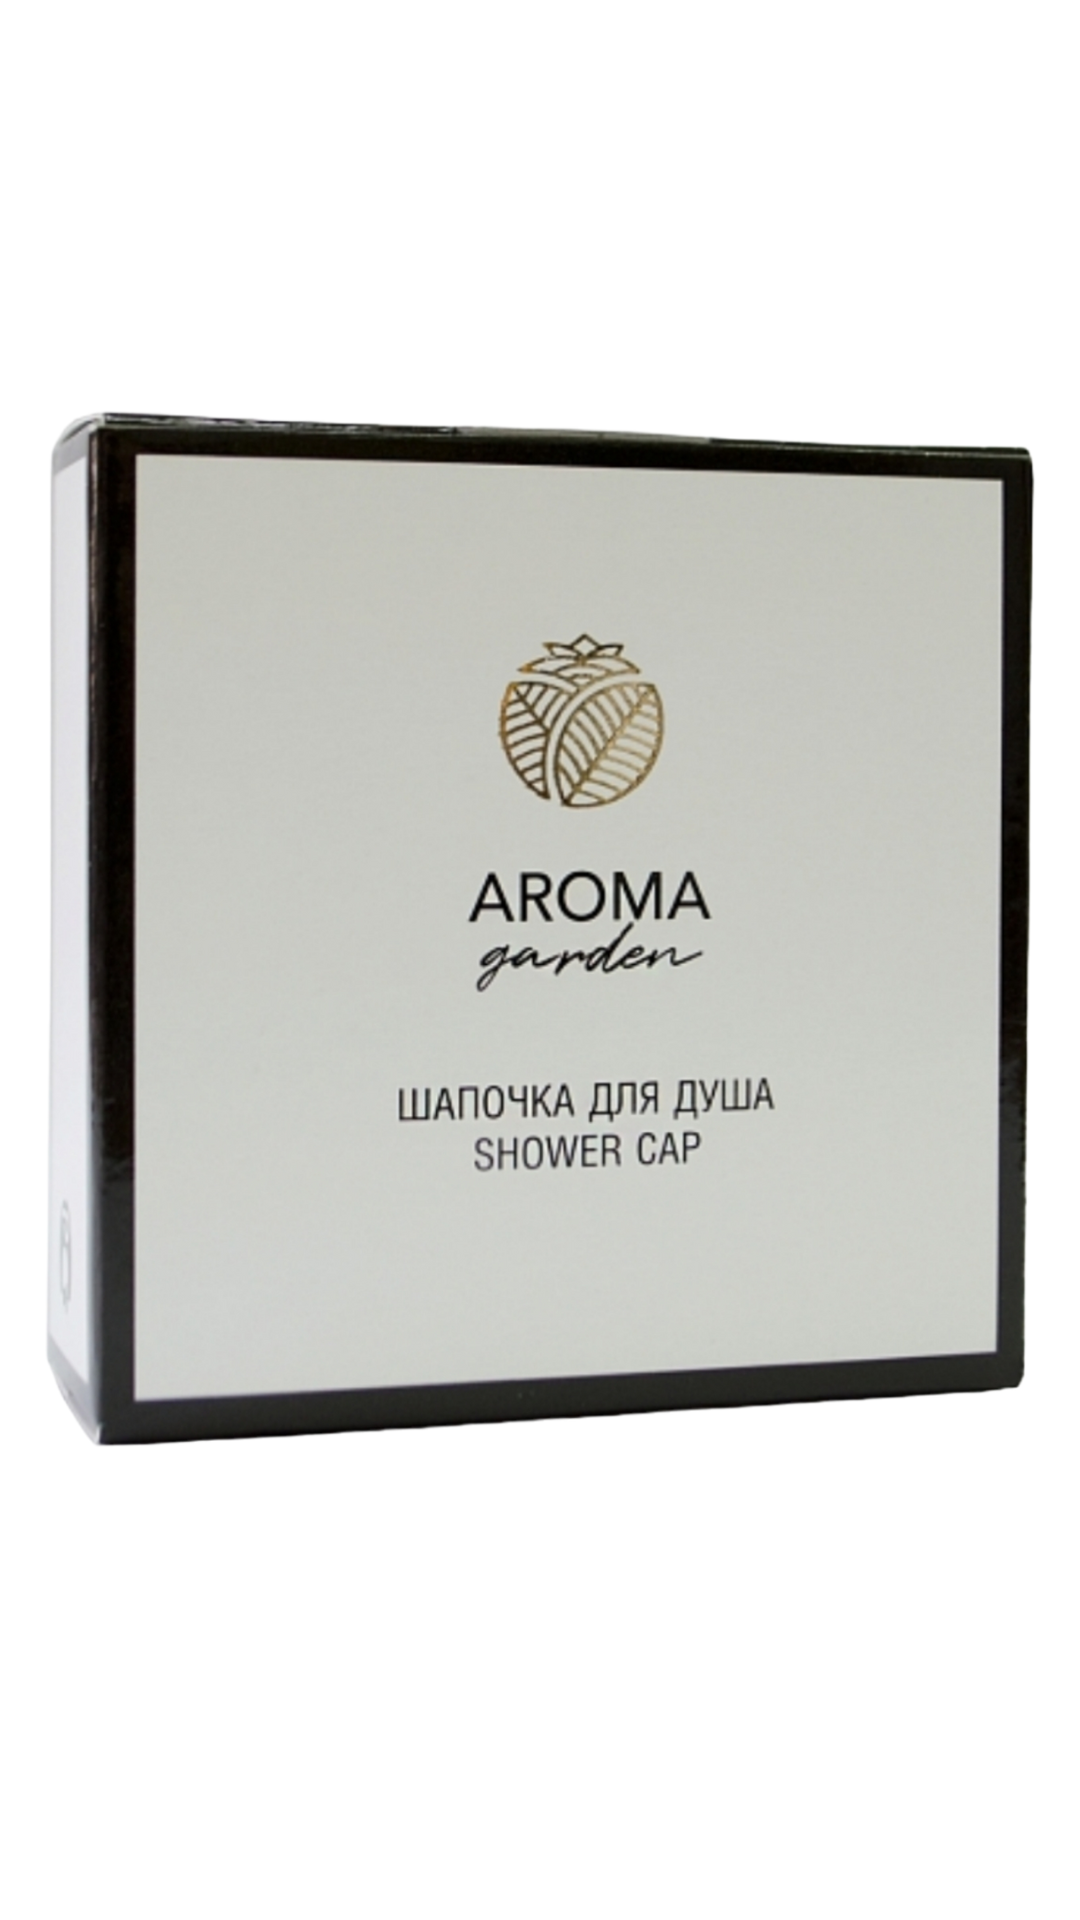 Шапочки для душа Aroma Garden картон 250 шт. набор конфет красный октябрь 170 г купить в интернет магазине аленка